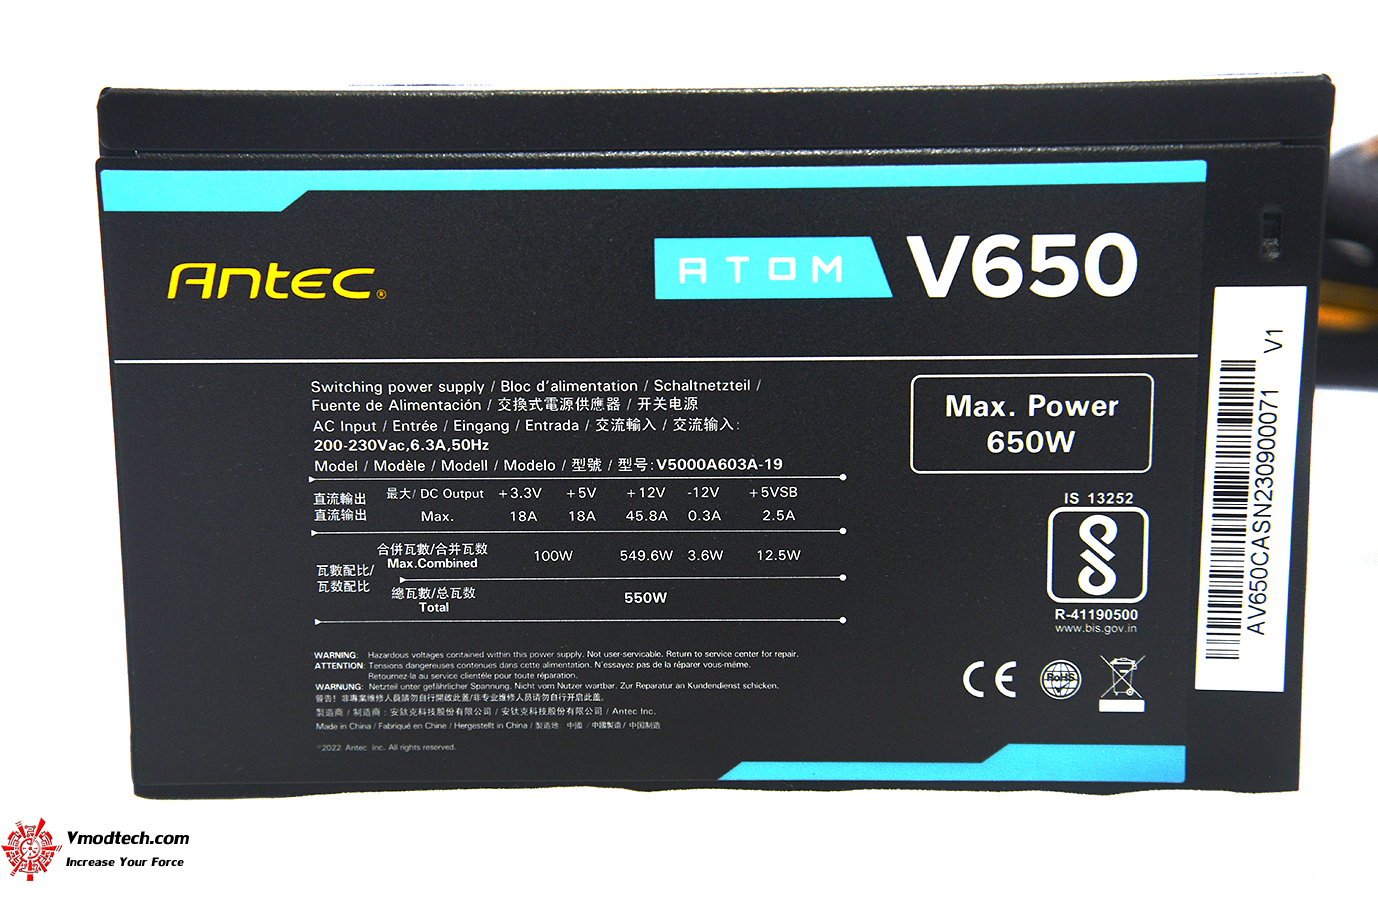 dsc 7545 ANTEC ATOM V650 REVIEW